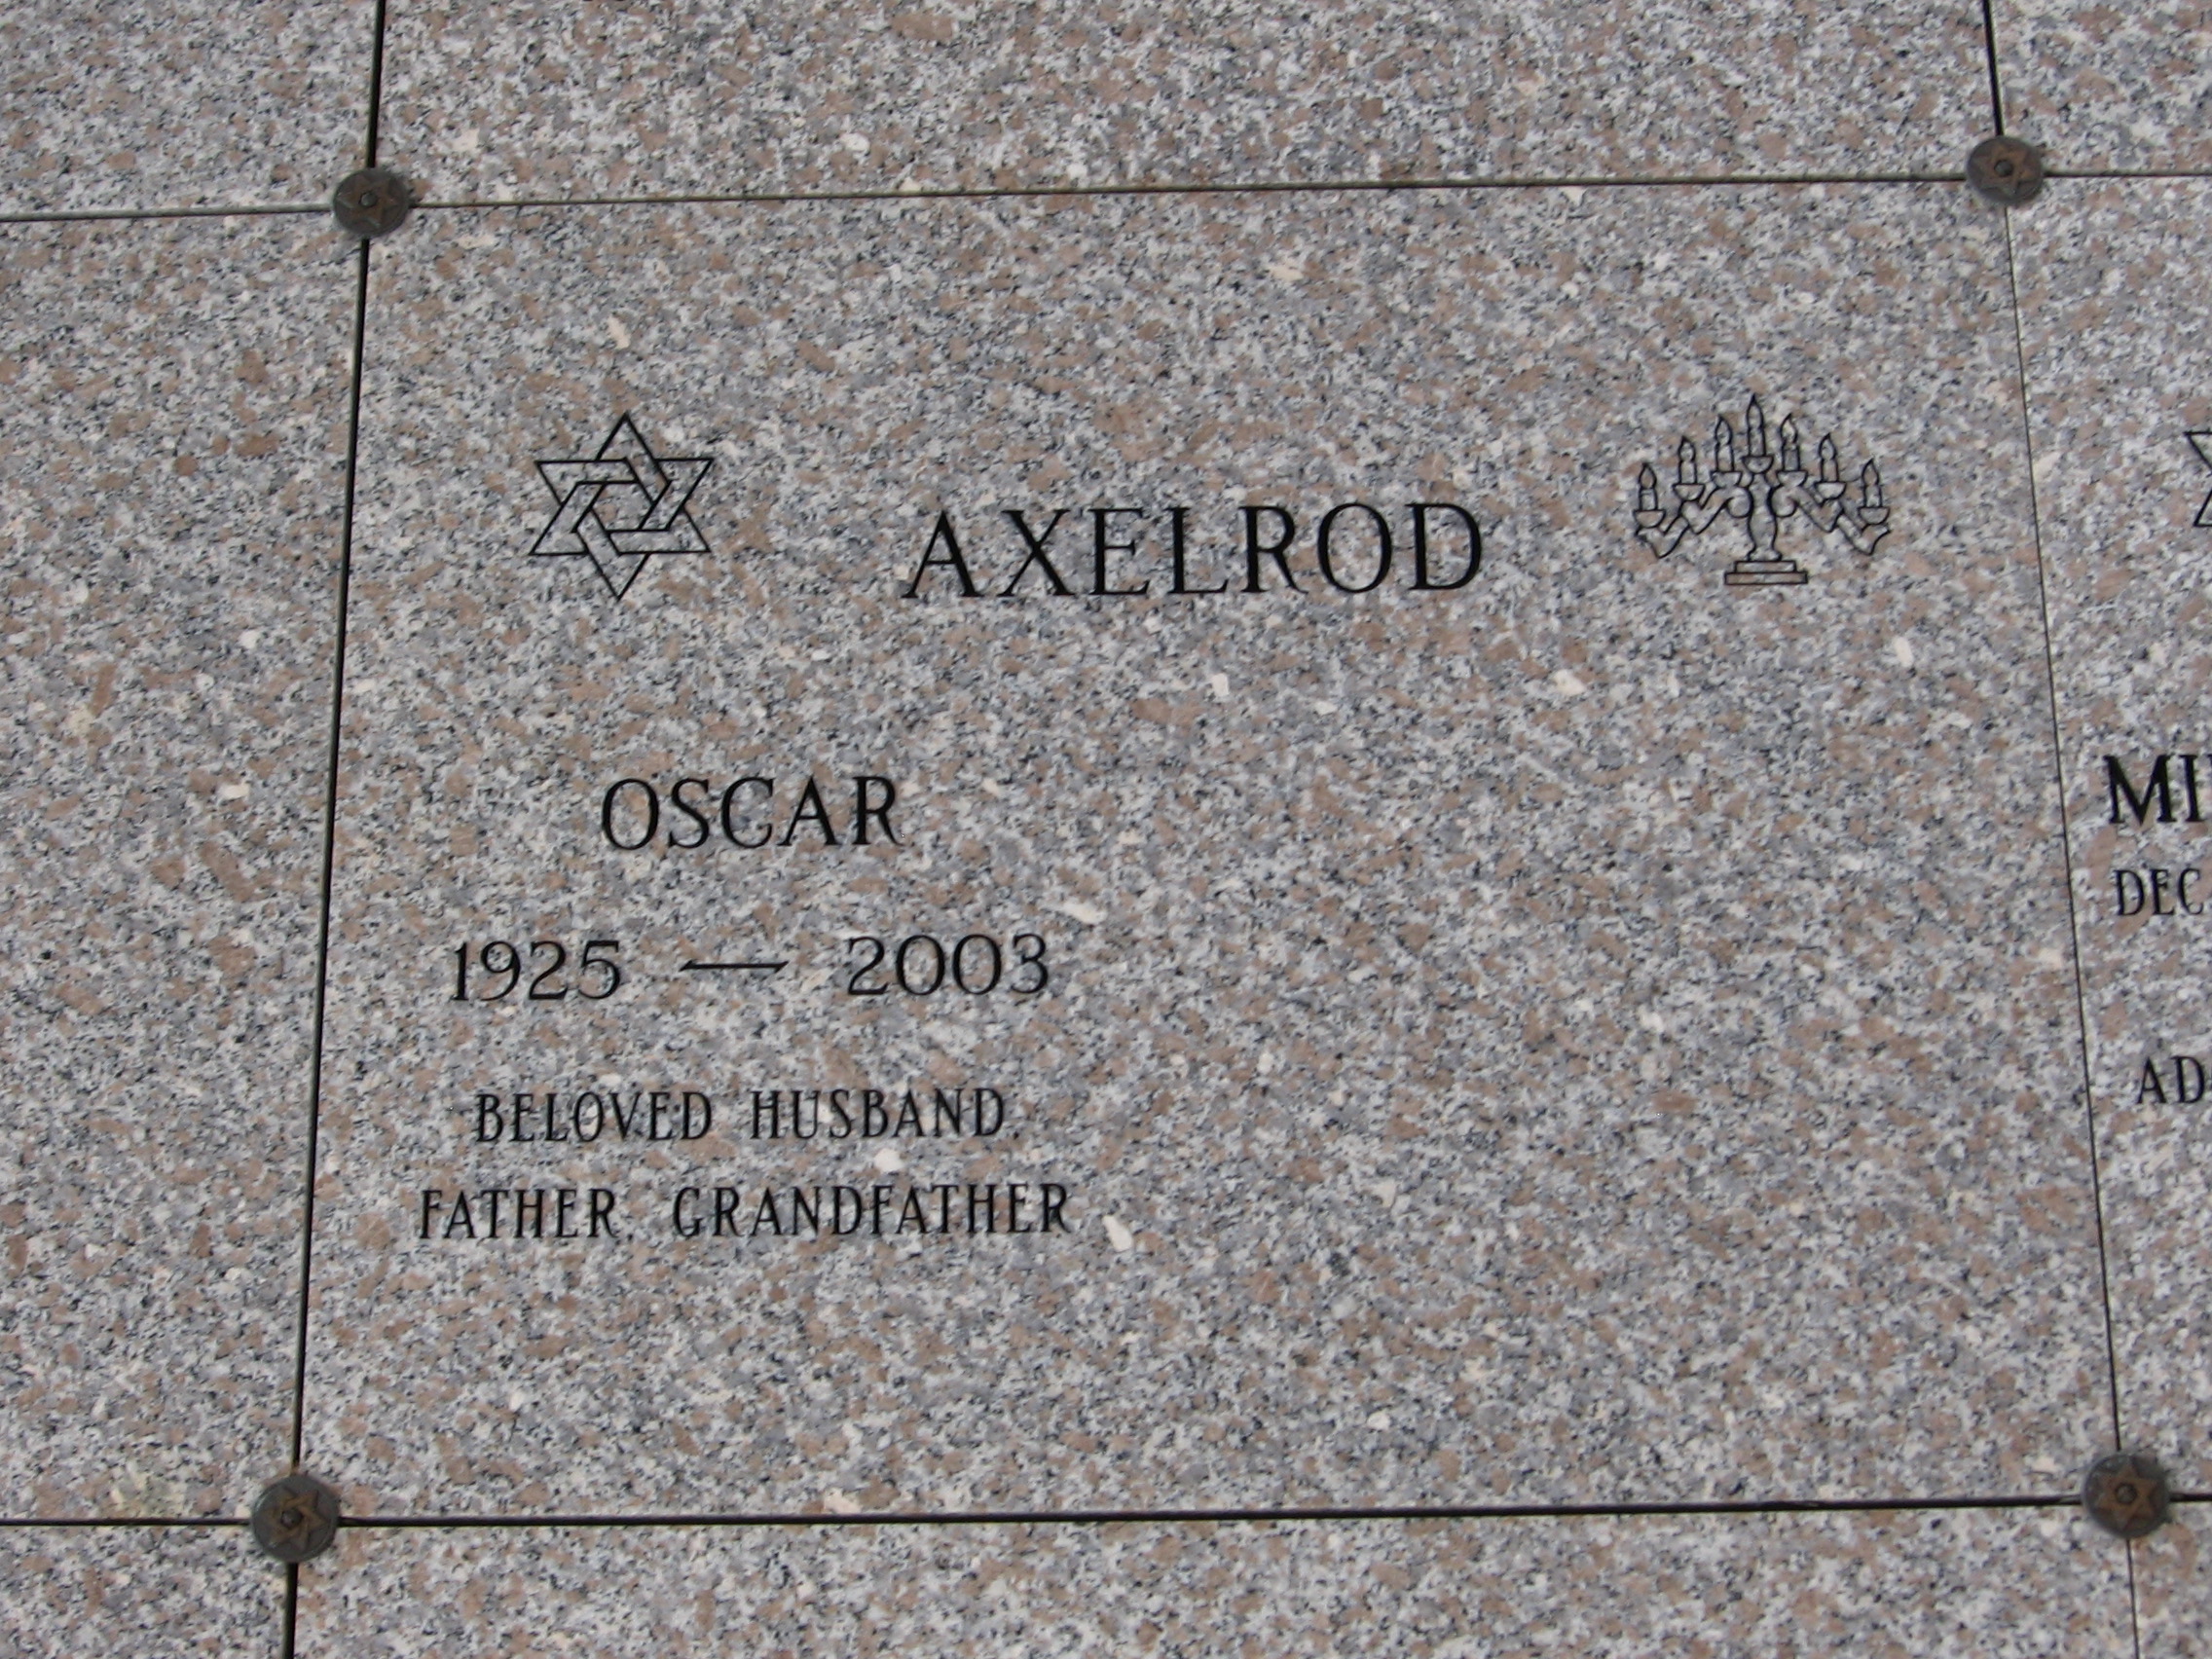 Oscar Axelrod